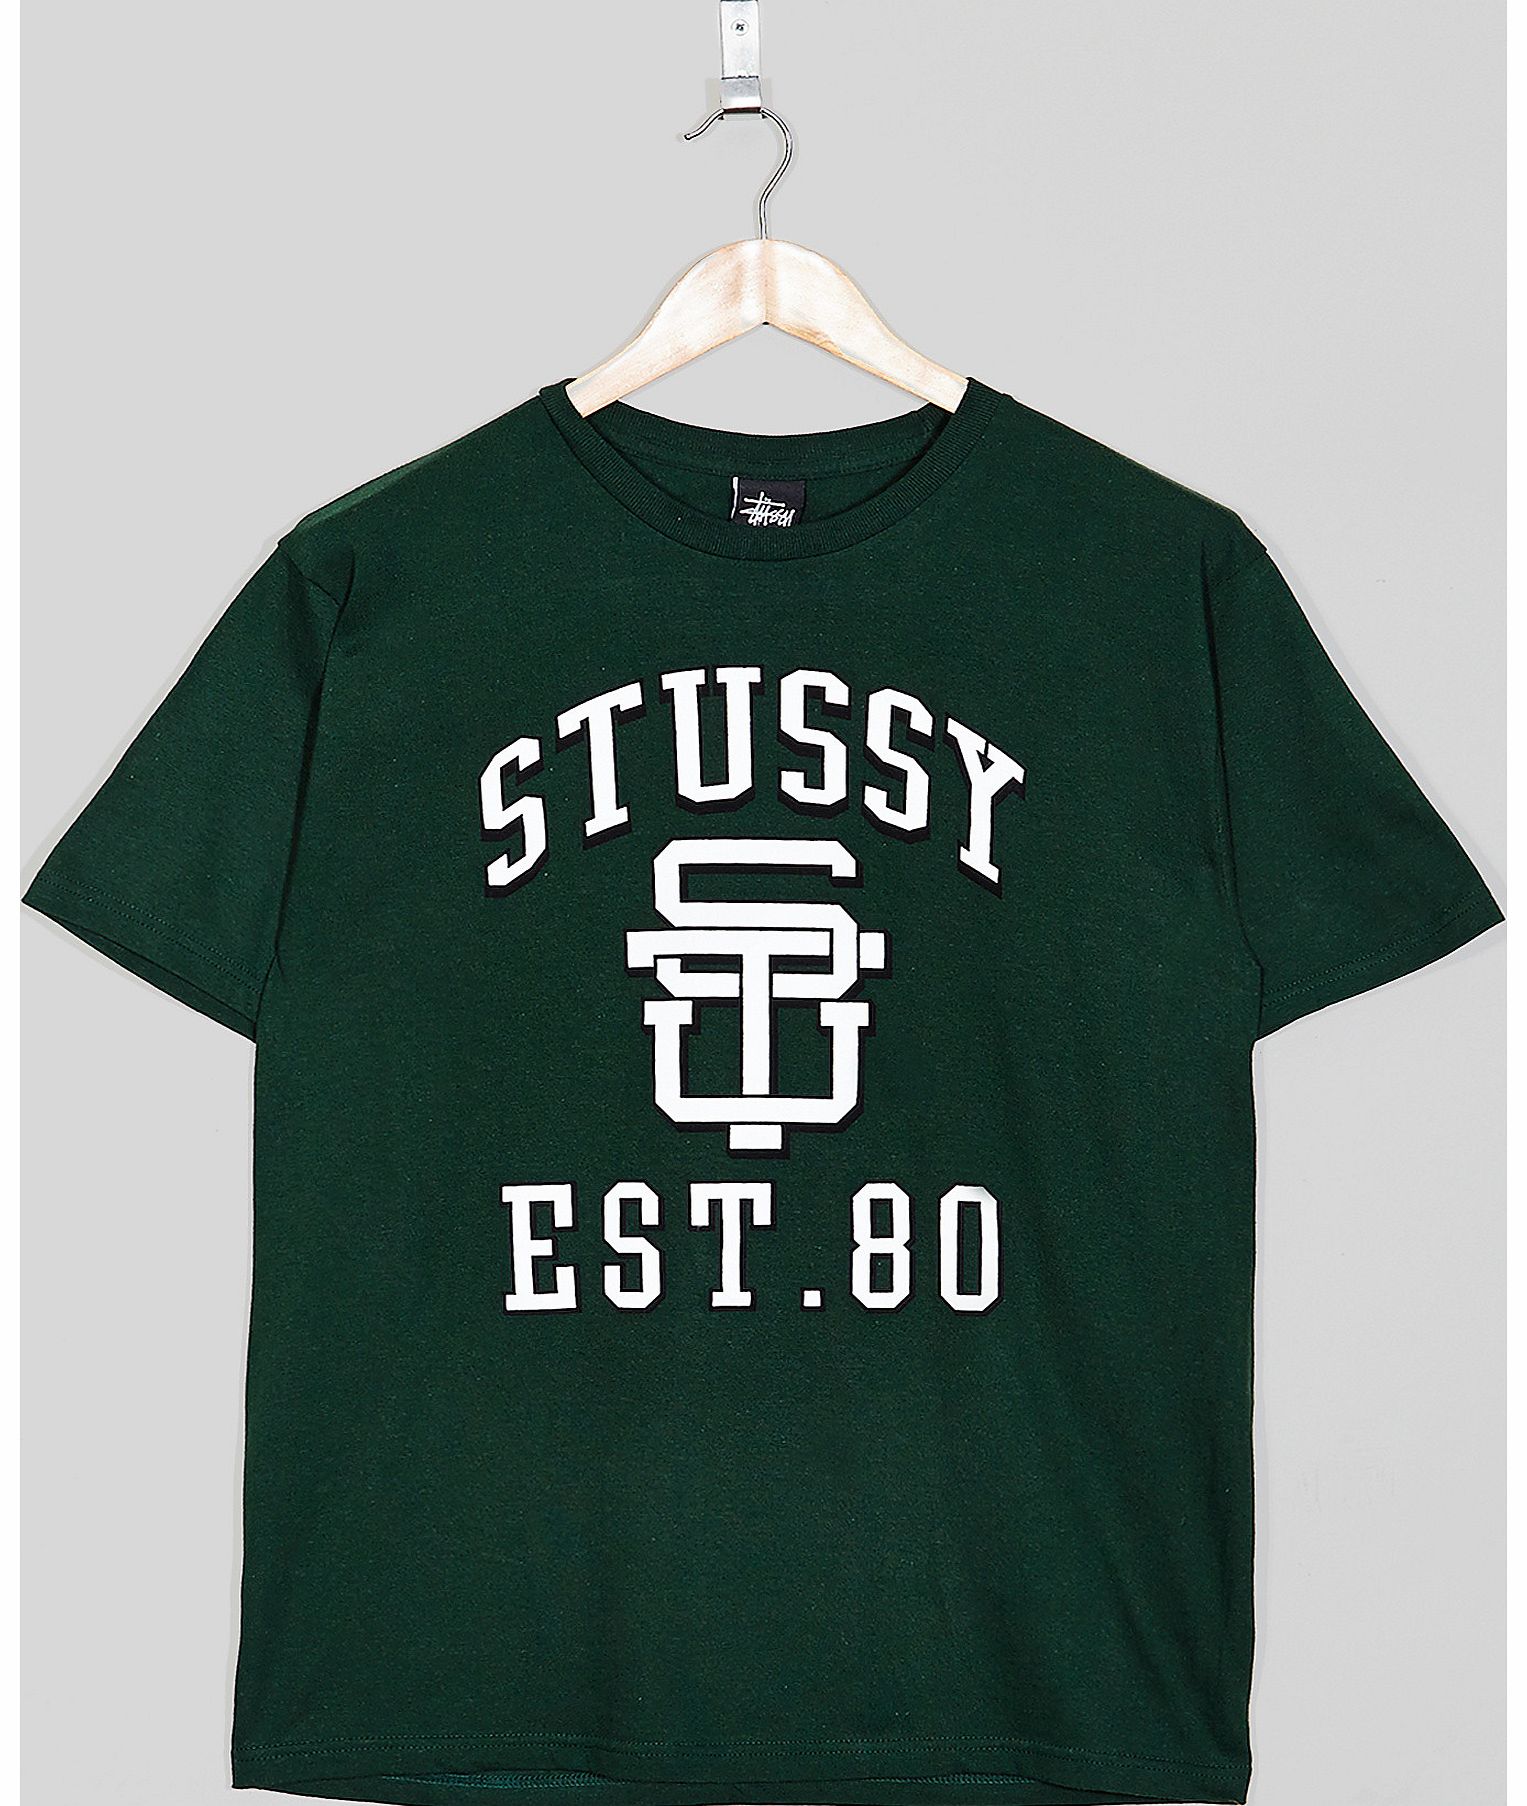 Stussy Est. 80 T-Shirt